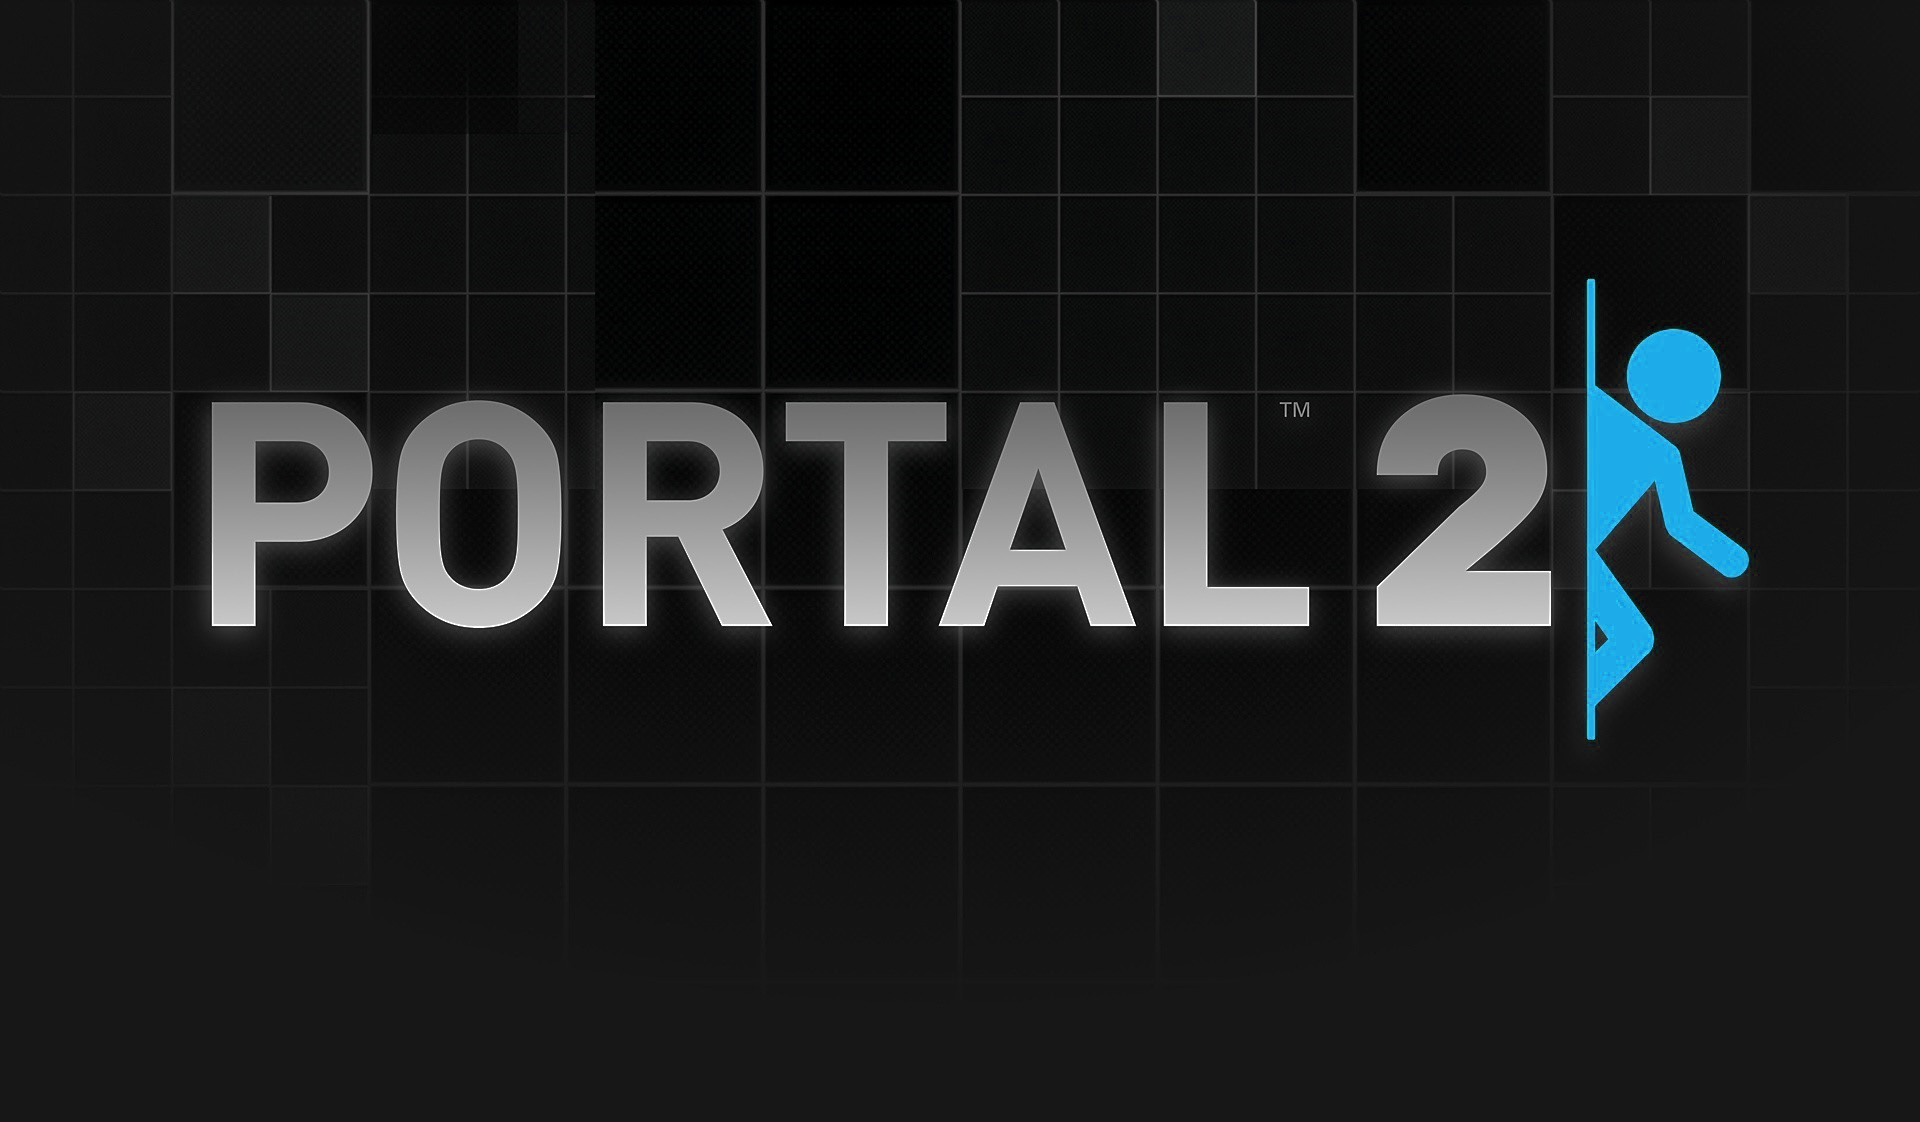 Portal 2 / ПРОХОЖДЕНИЕ, ЧАСТЬ 2 / ЛАЗЕРЫ И ПРЫЖКИ!